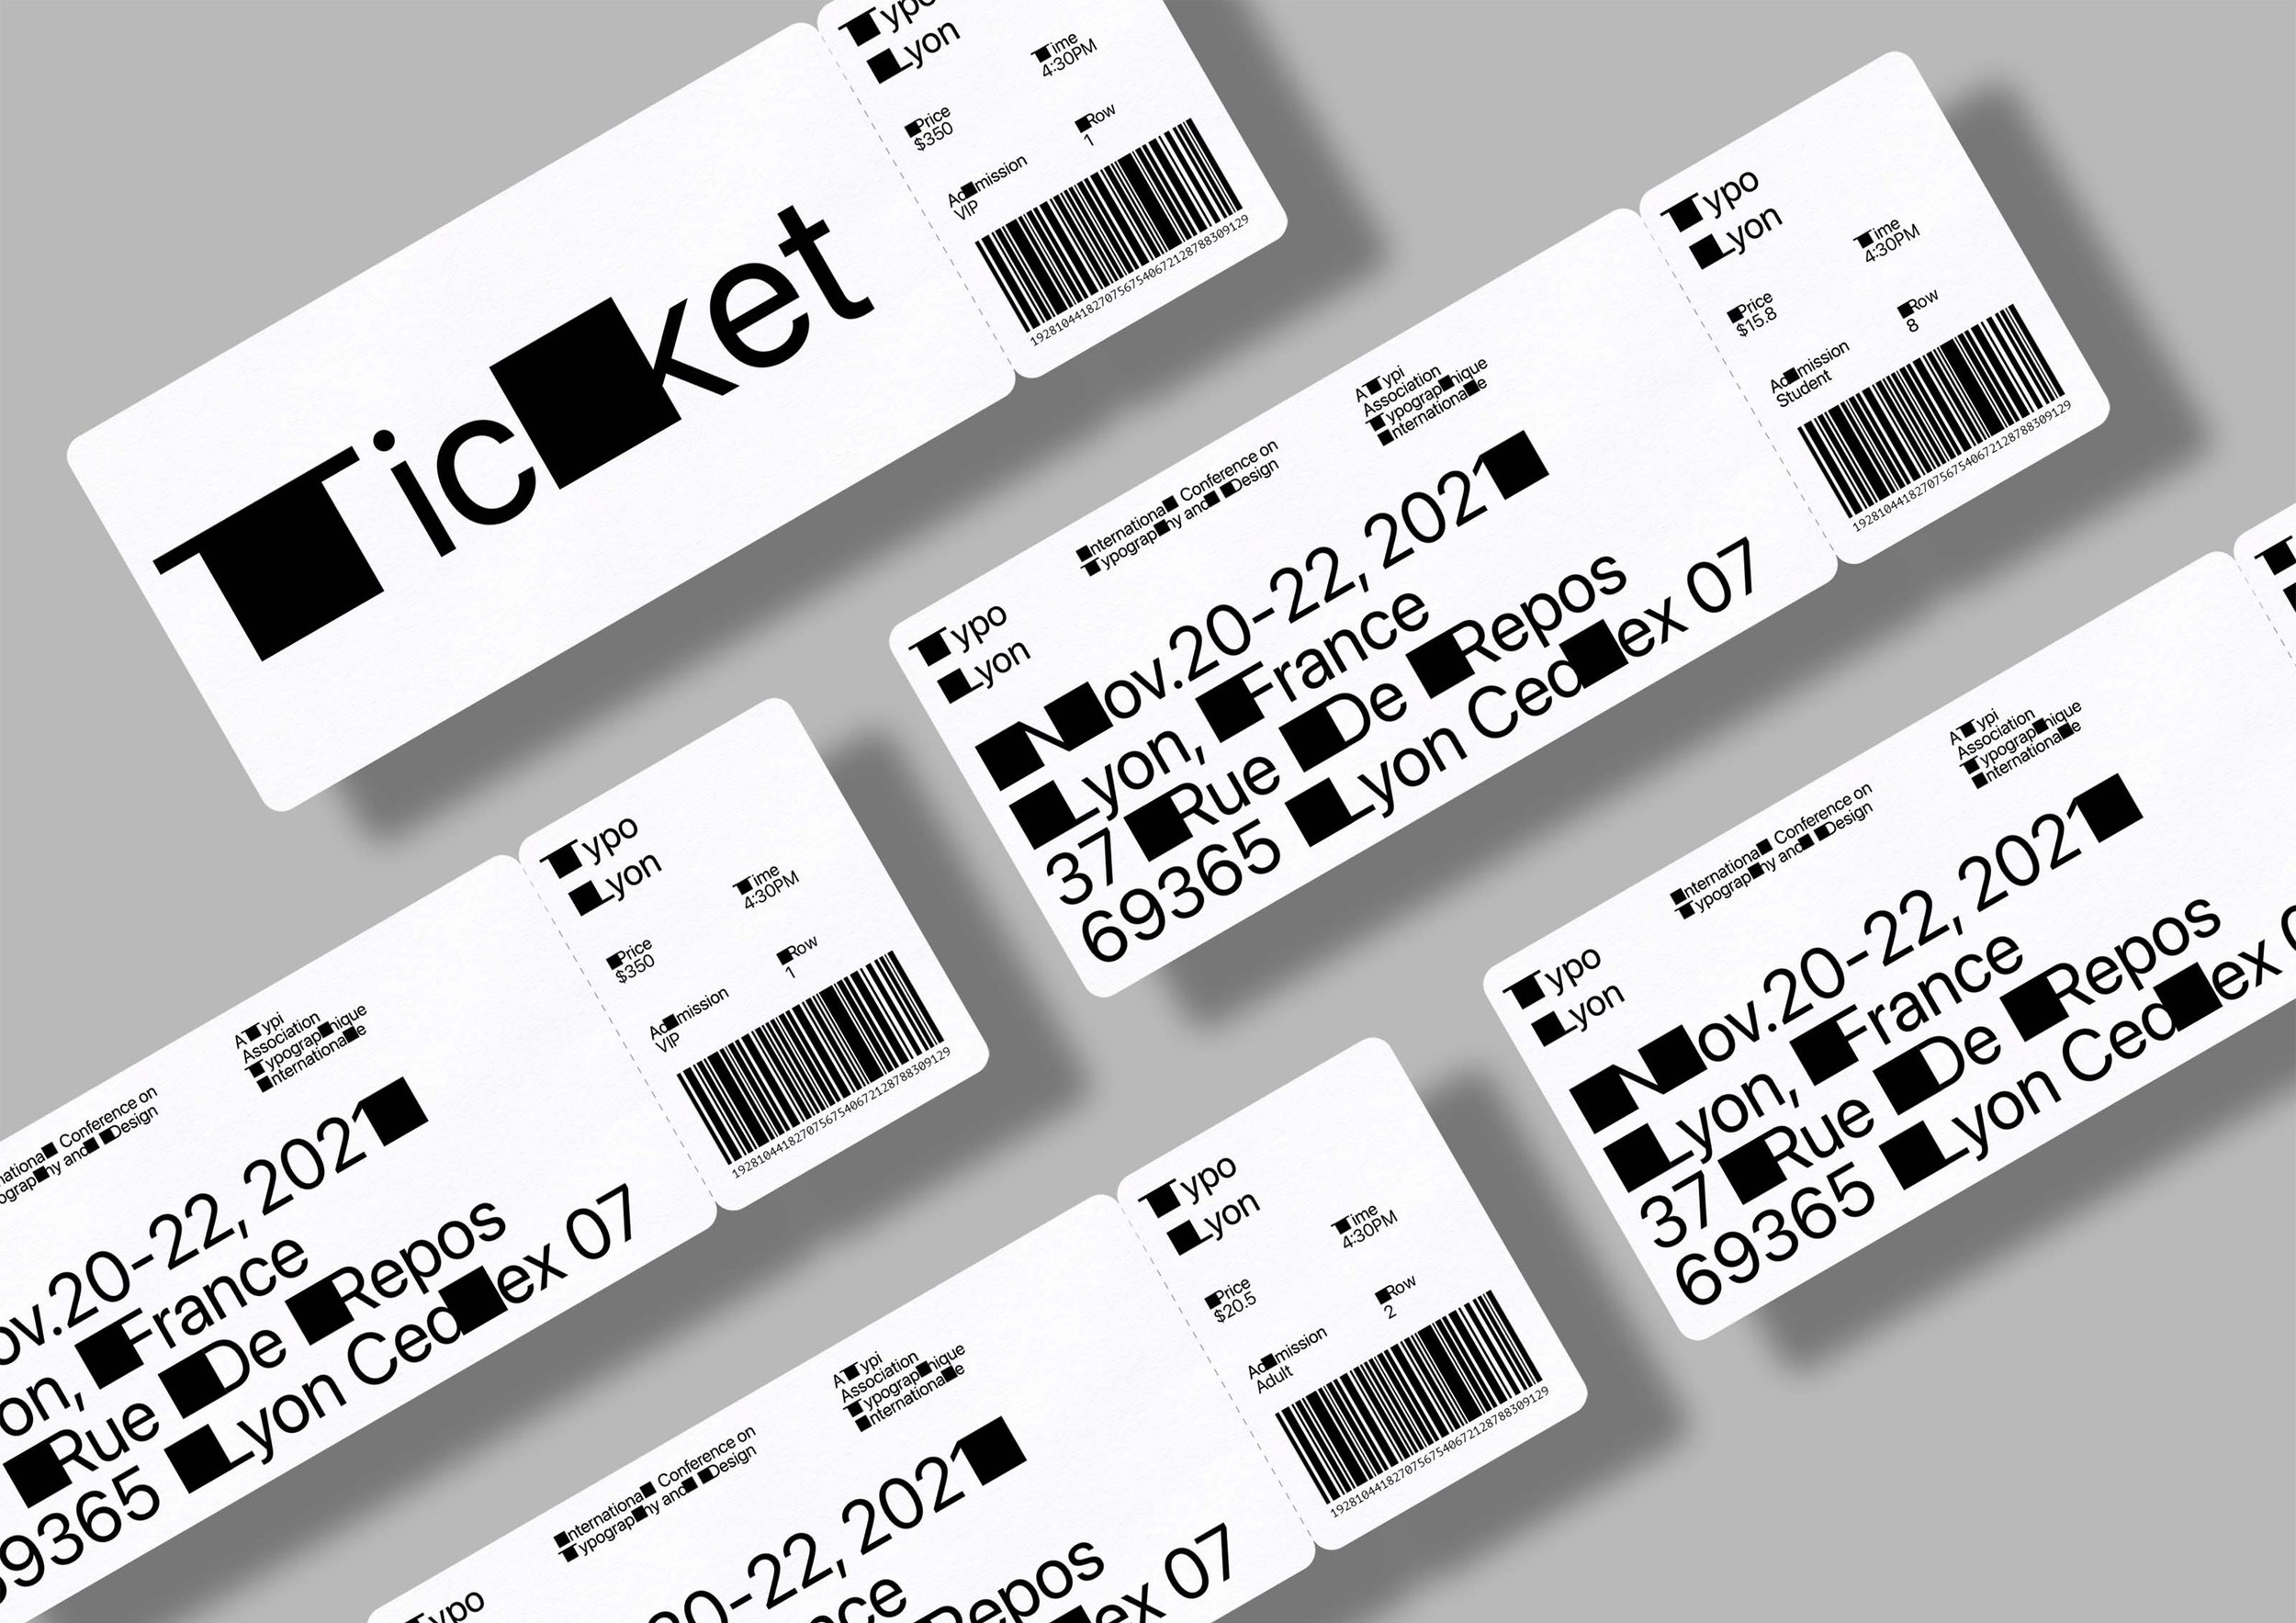 Typo Lyon_Tickets_Jo Iijima.jpg